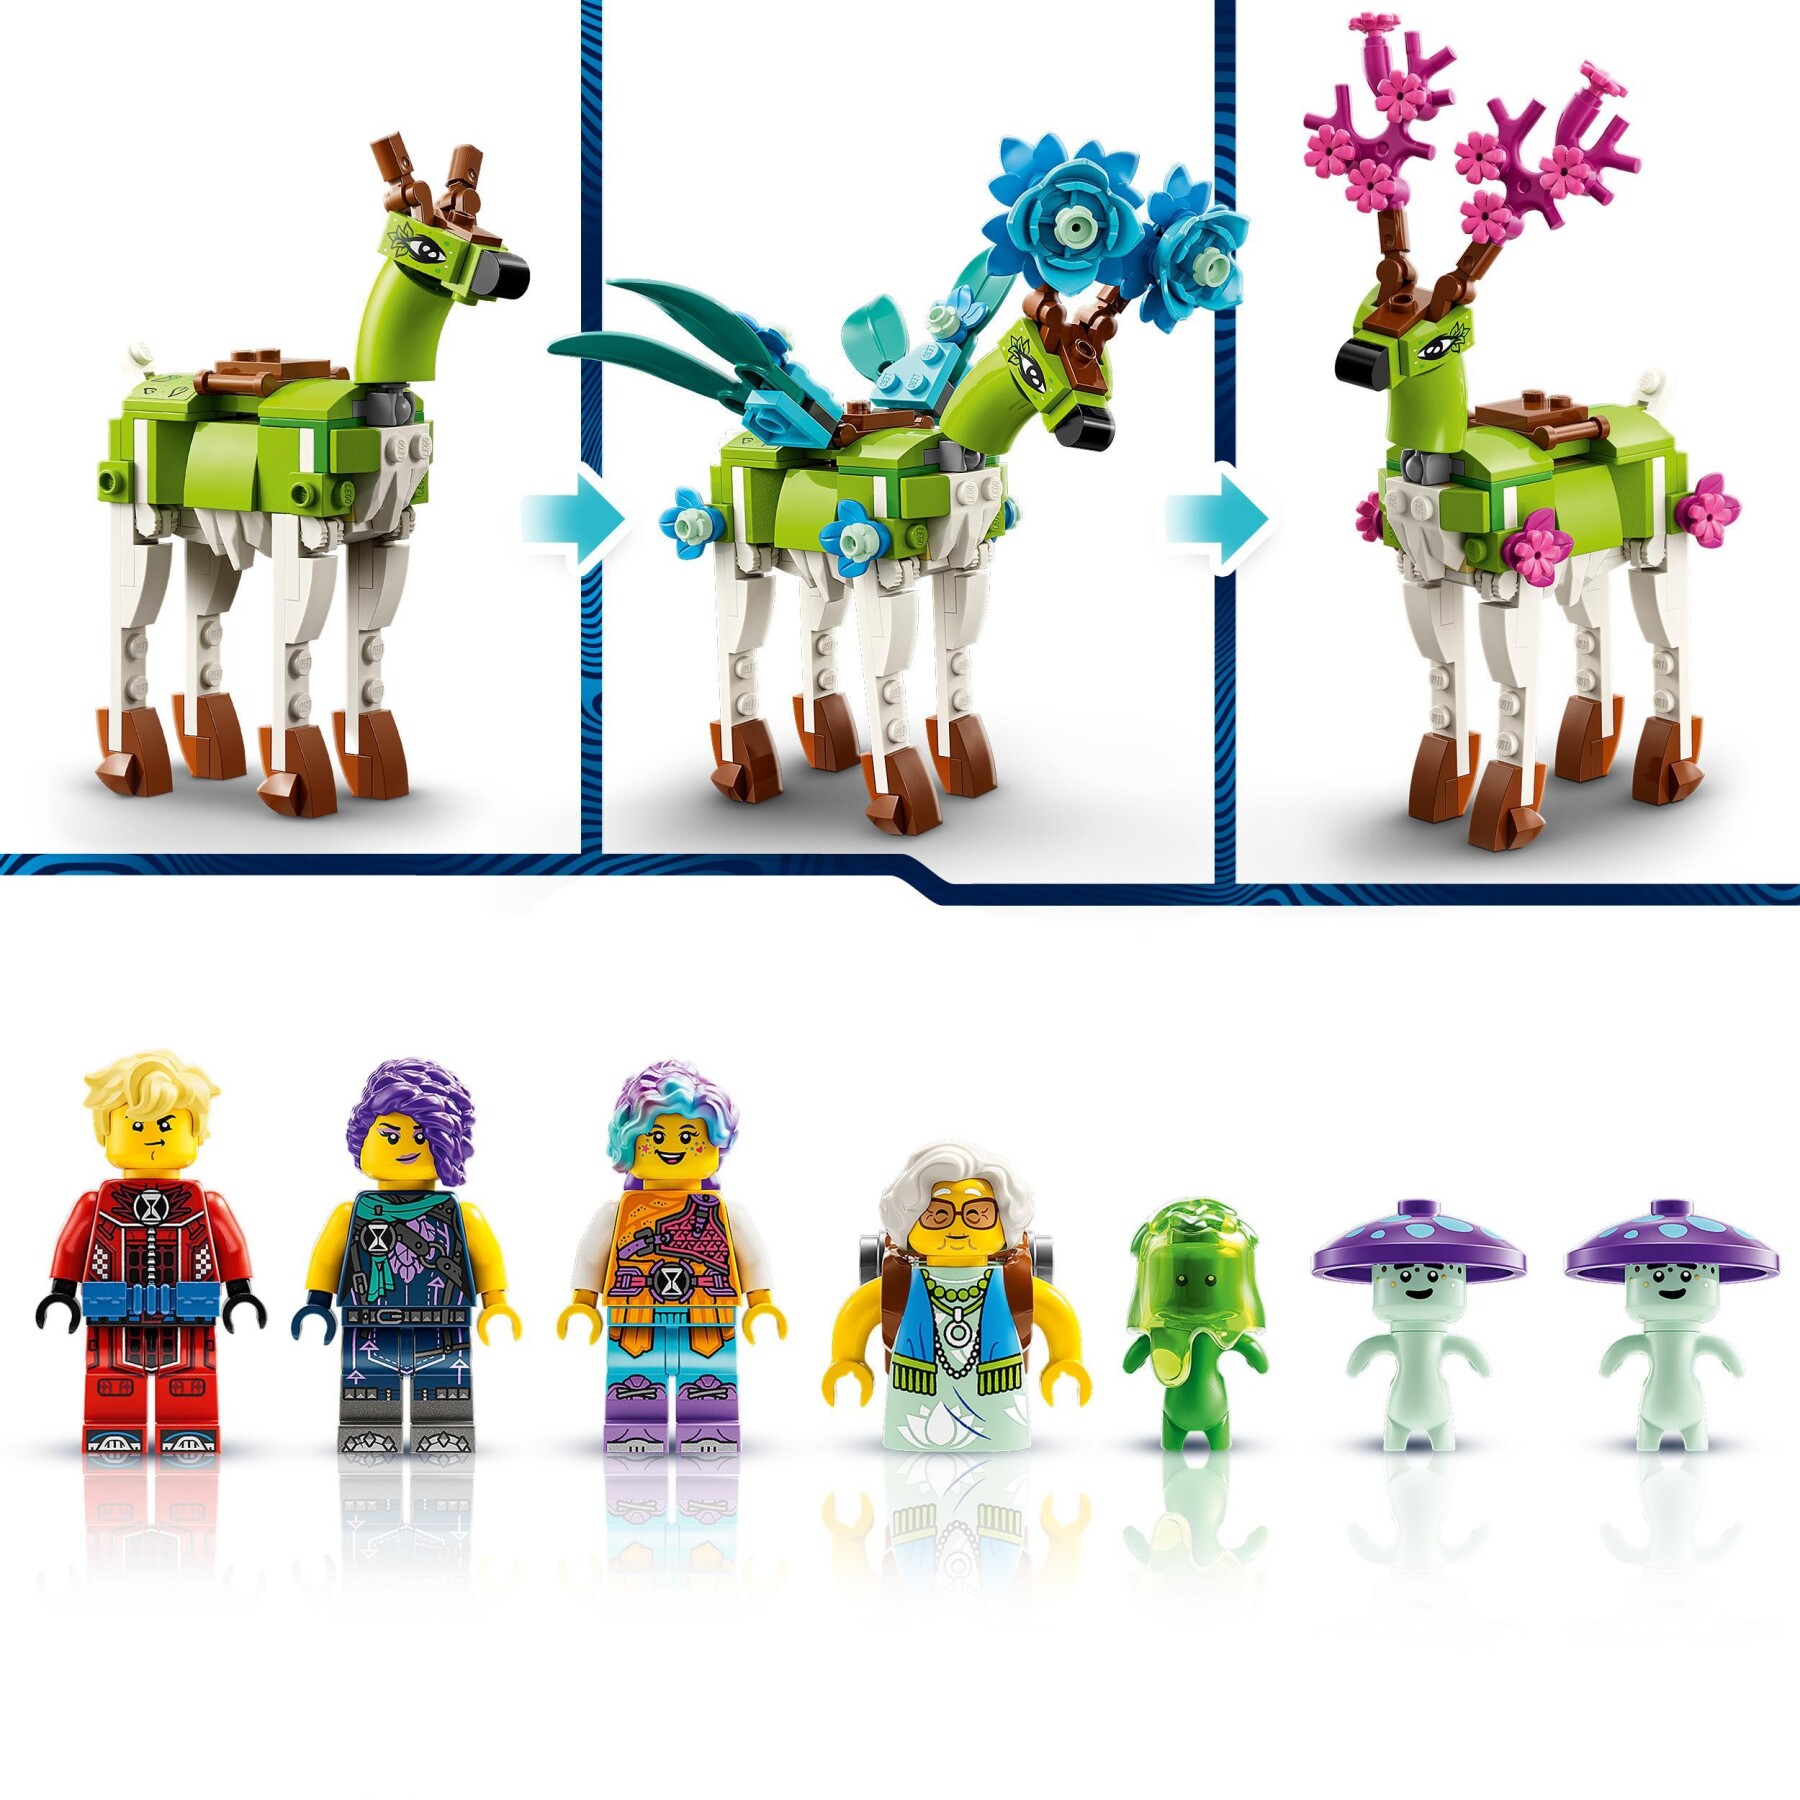 Lego dreamzzz 71459 scuderia delle creature dei sogni, fattoria giocattolo con cervo costruibile in 2 modi, animali fantastici - Lego